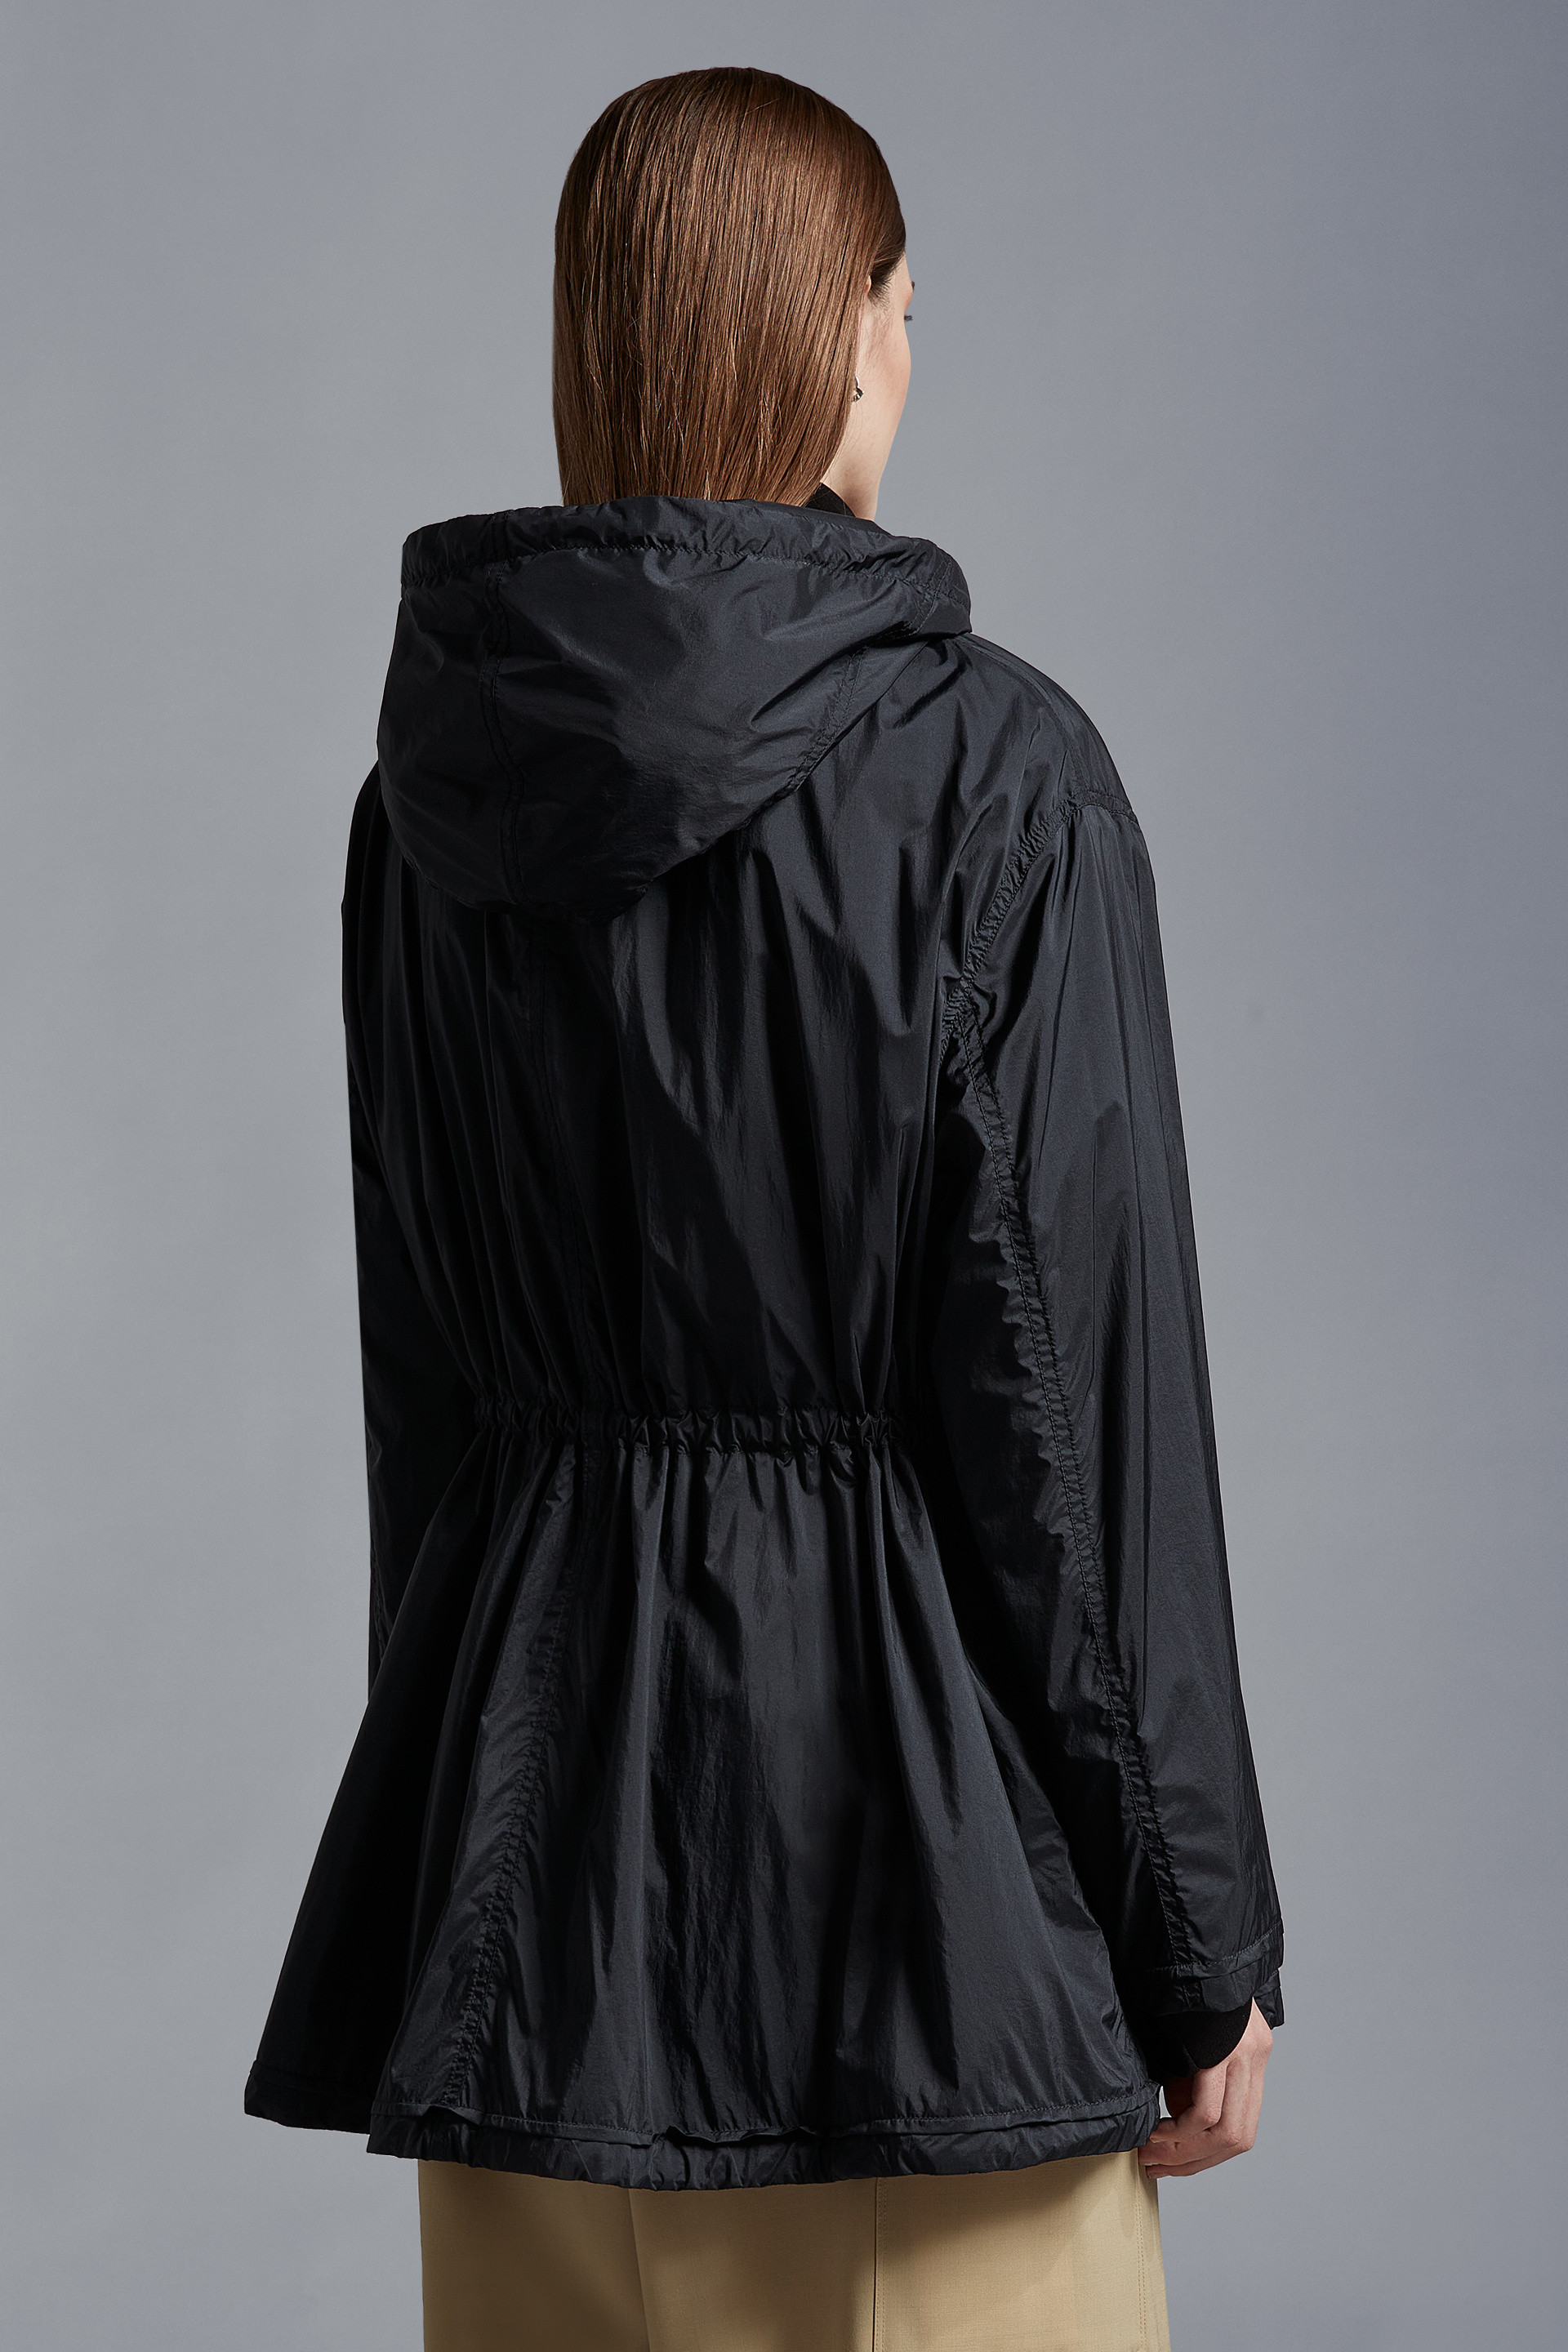 ブラック Suirジャケット : ウインドブレーカーとレインコート 向けの